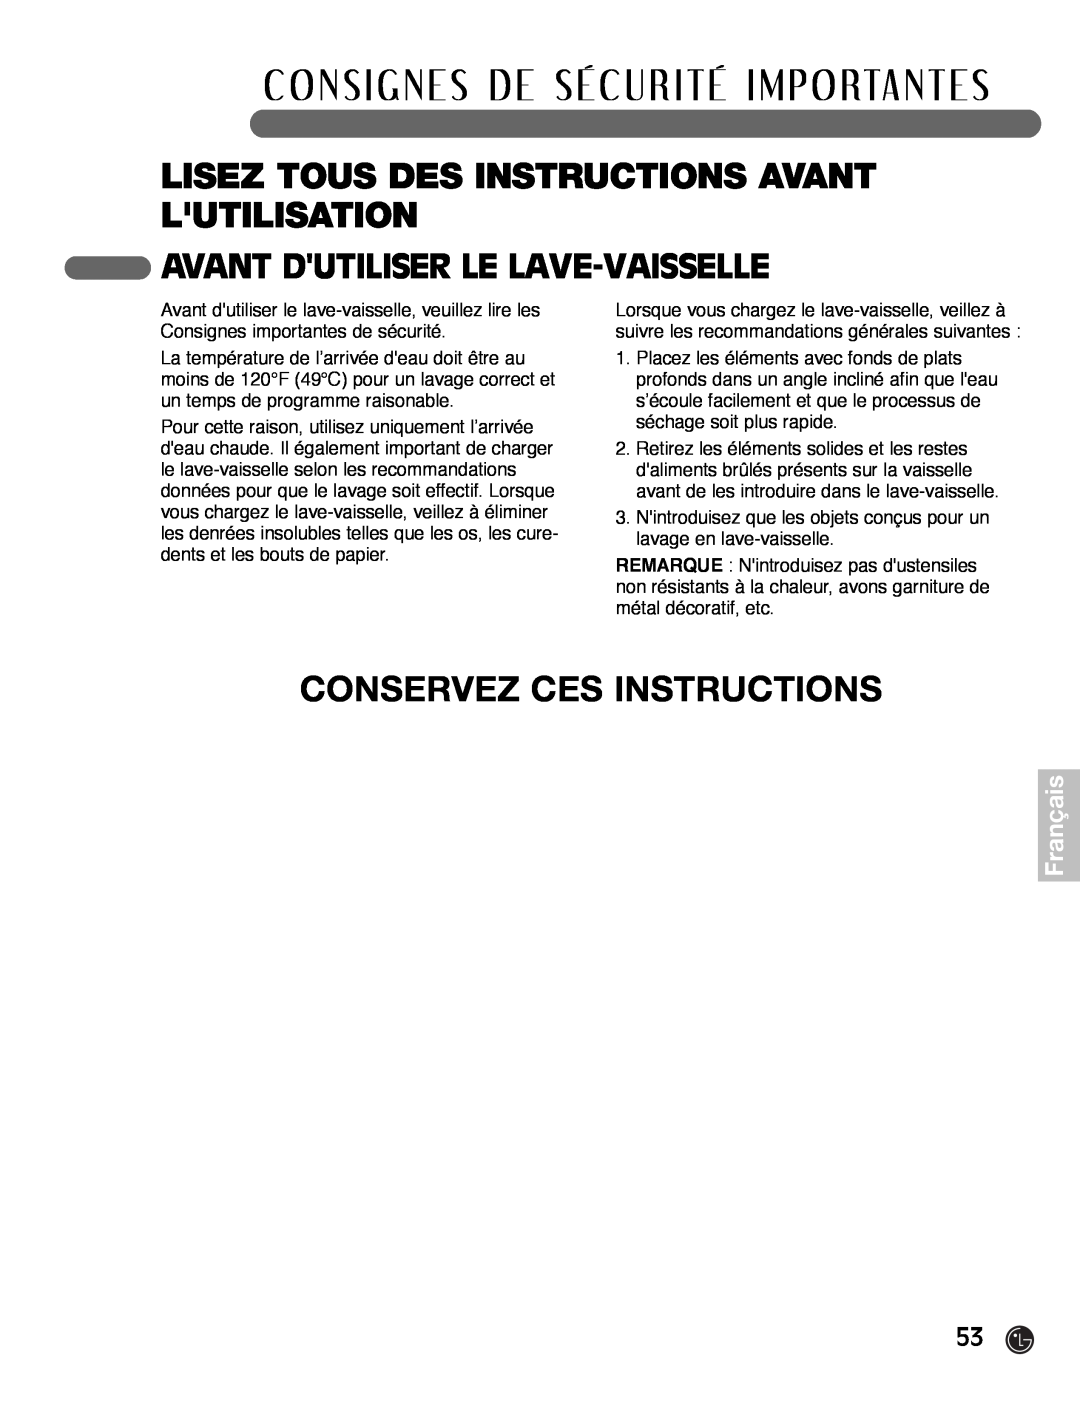 LG Electronics LDF7932ST, LDF7932WW, LDF7932BB Conservez Ces Instructions, Avant Dutiliser Le Lave-Vaisselle, Français 